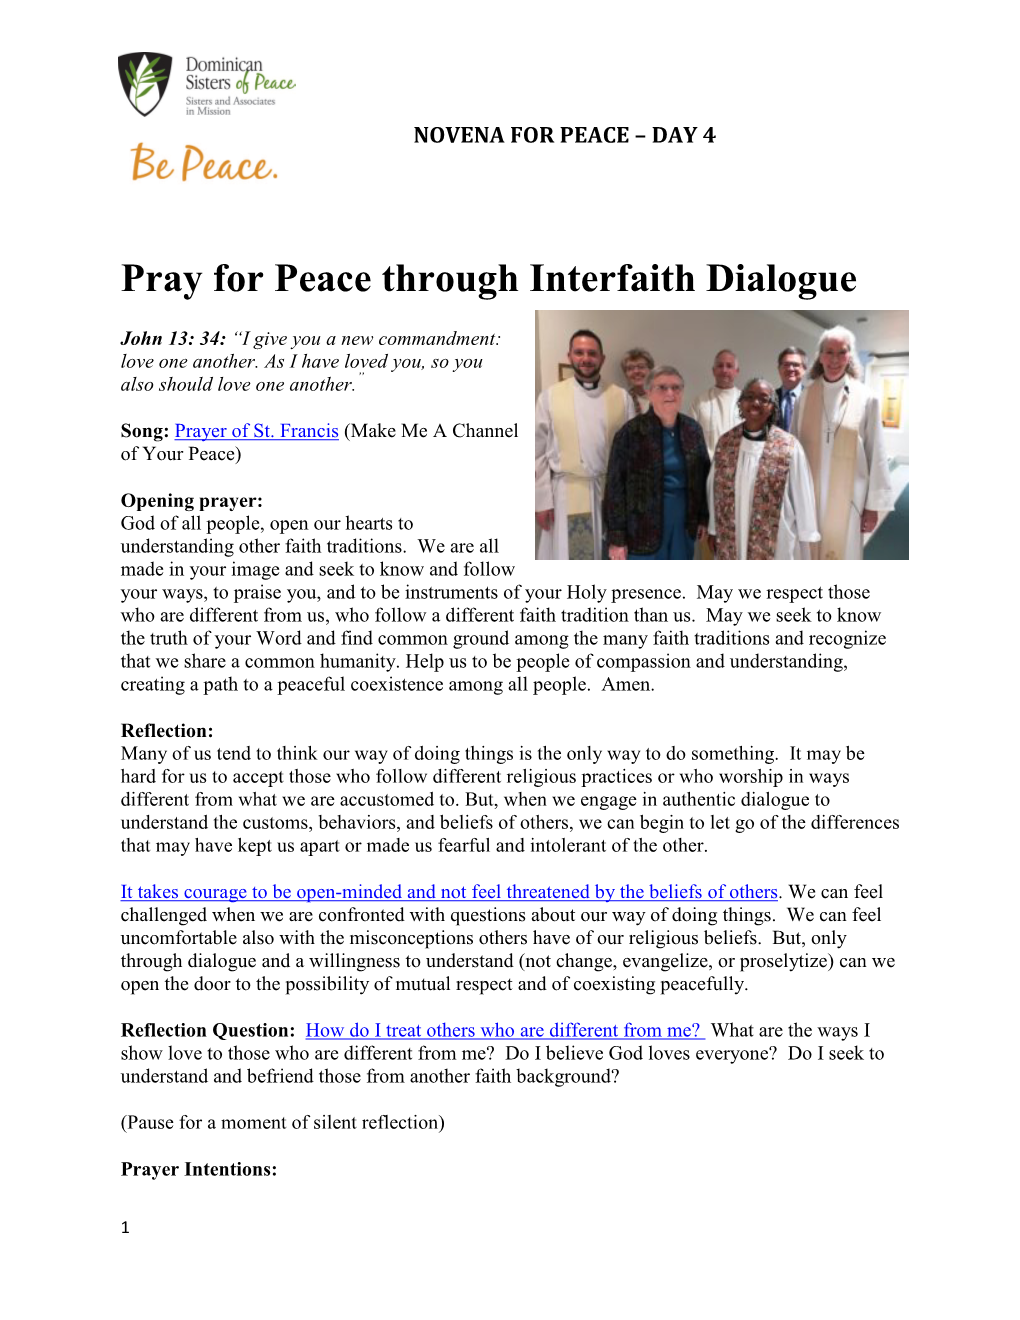 Pray for Peace Through Interfaith Dialogue